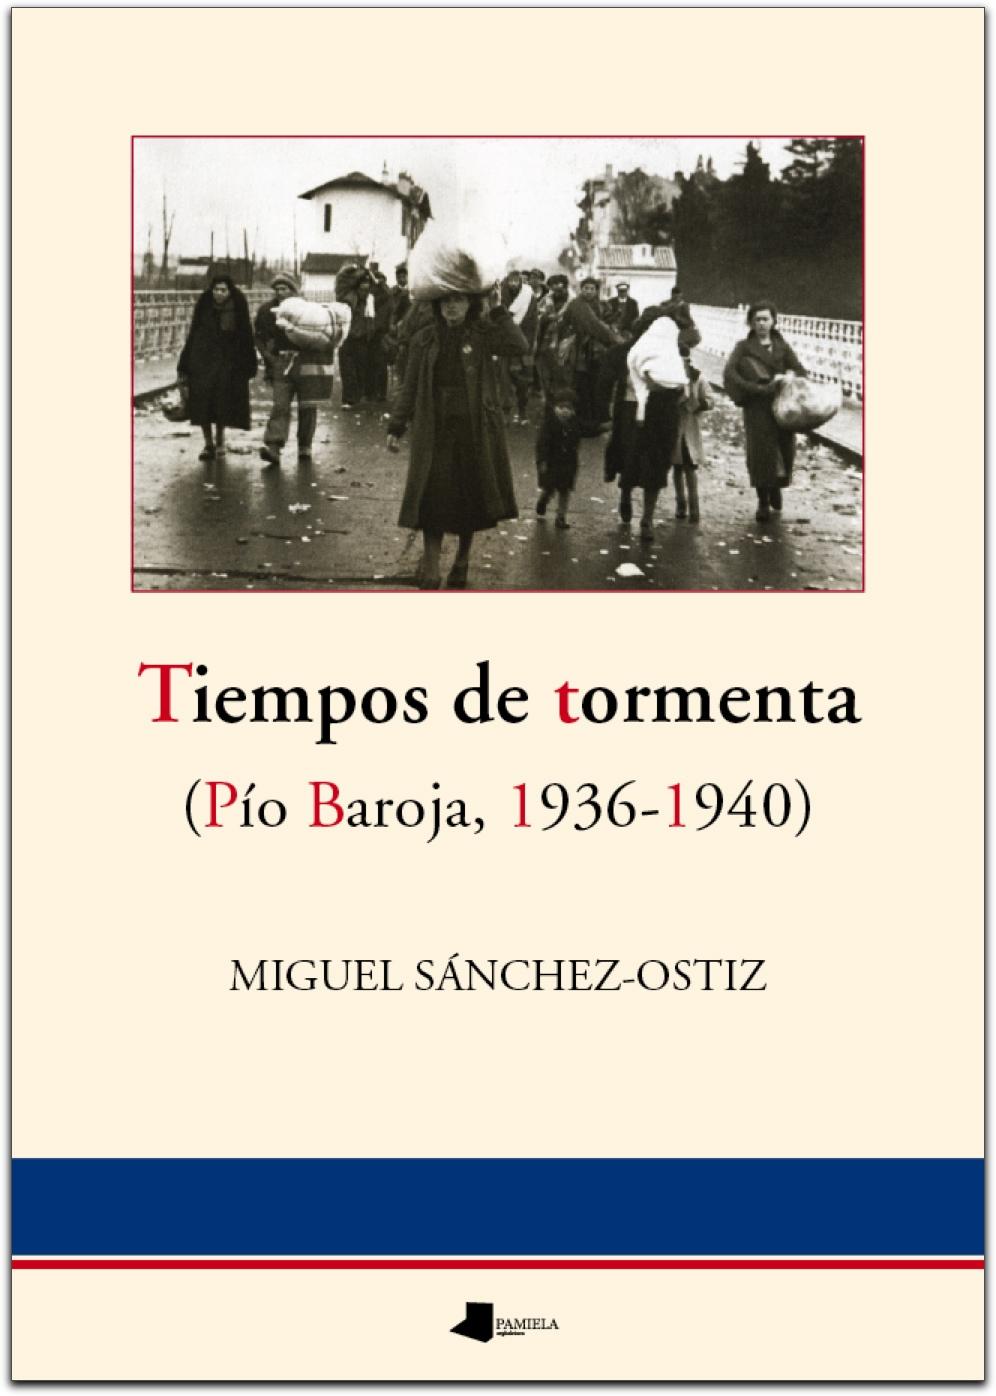 Tiempos de tormenta "(Pío Baroja, 1936-1940)"